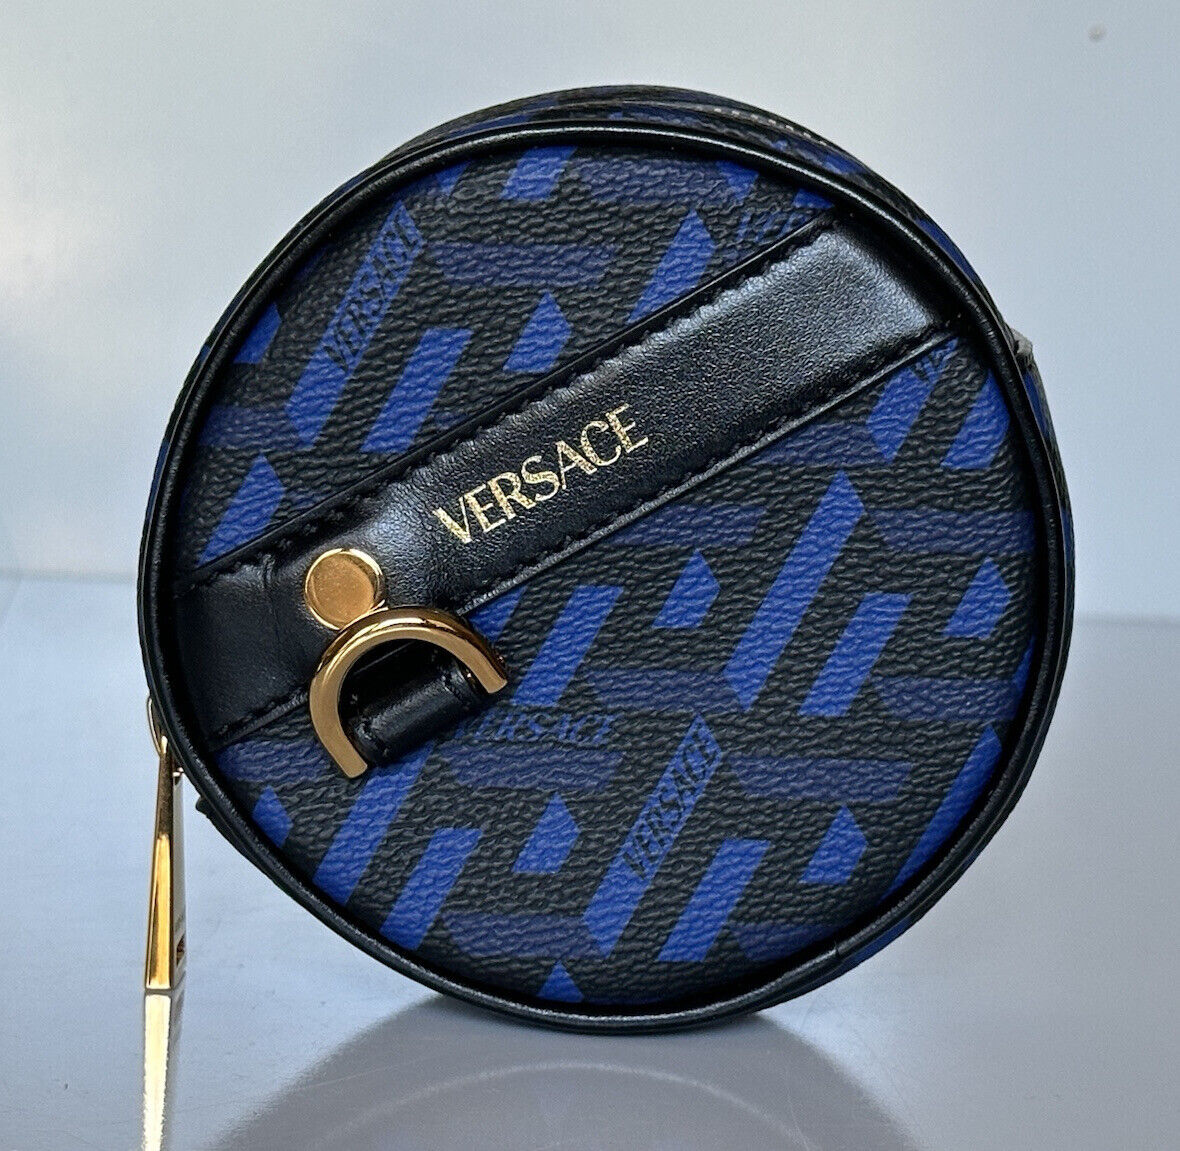 NWT 325 долларов США Versace Черный/синий кошелек с монограммой из кожи/холста IT 1001876 